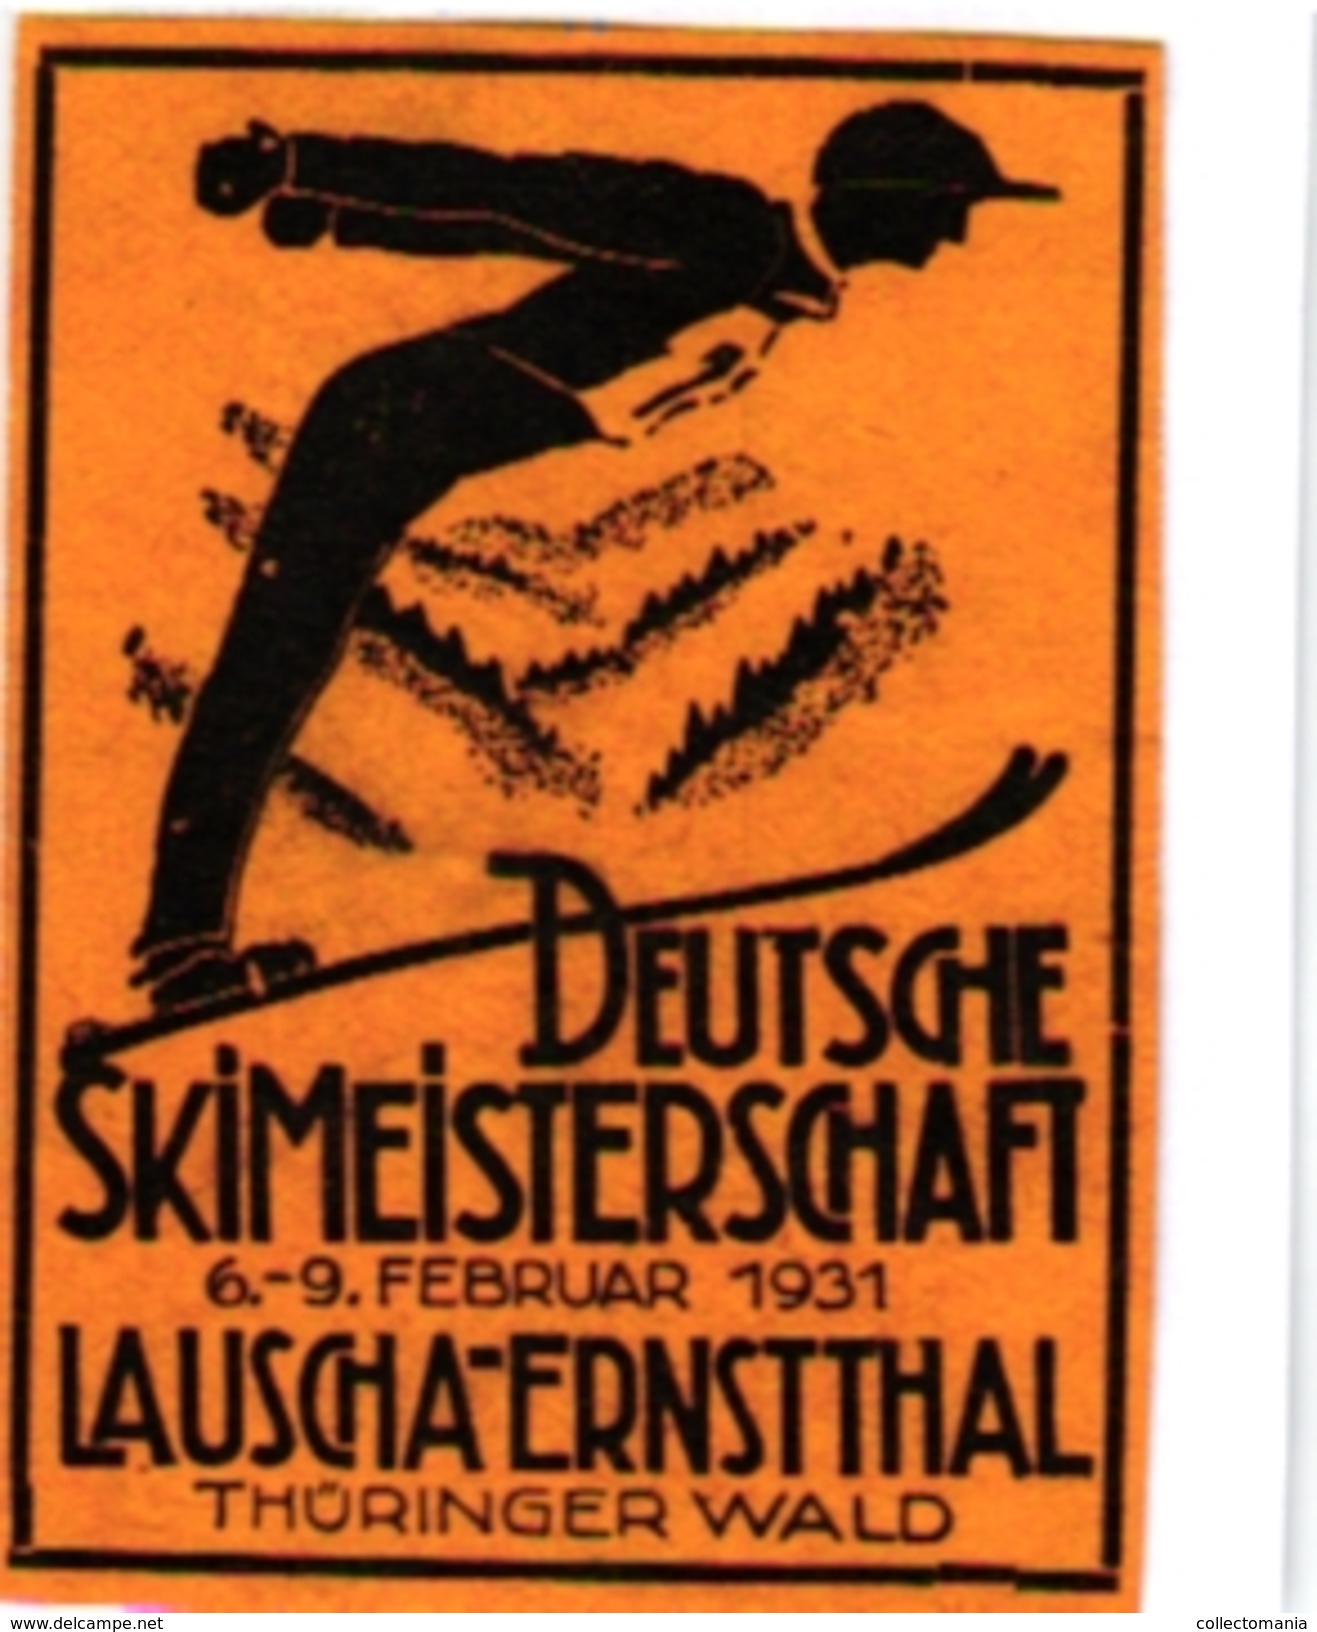 1 Sluitzegel Poster Stamp  Deutsche Skimeisterschaft 1931 Lauscha-Ernstthal THURINGER WALD  SKI  4,3cmx 6cm - Ski